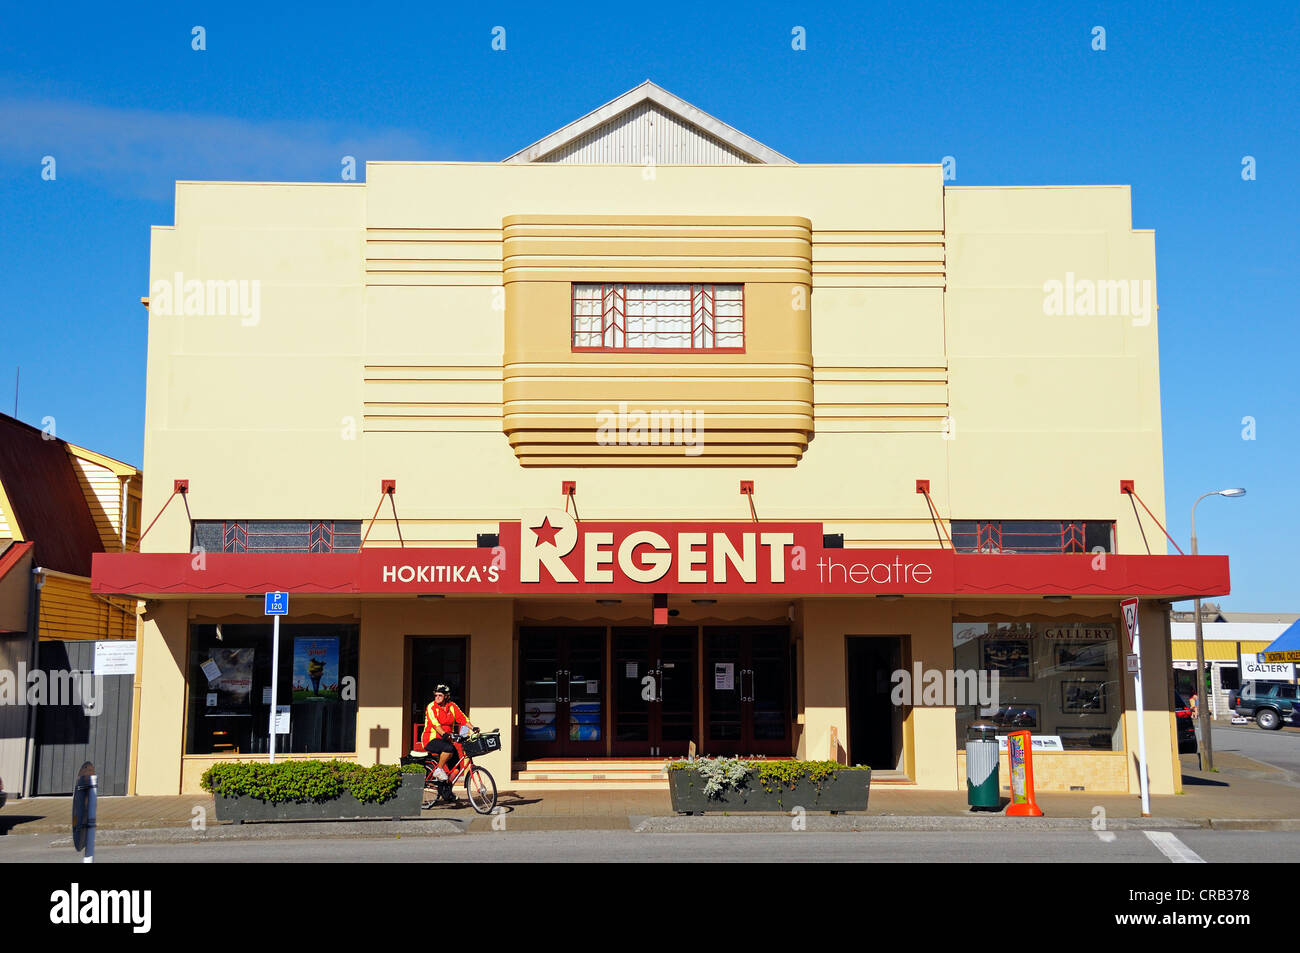 Cine con elementos Art Decó en la ciudad de Hokitika, costa oeste de la Isla Sur de Nueva Zelanda Foto de stock